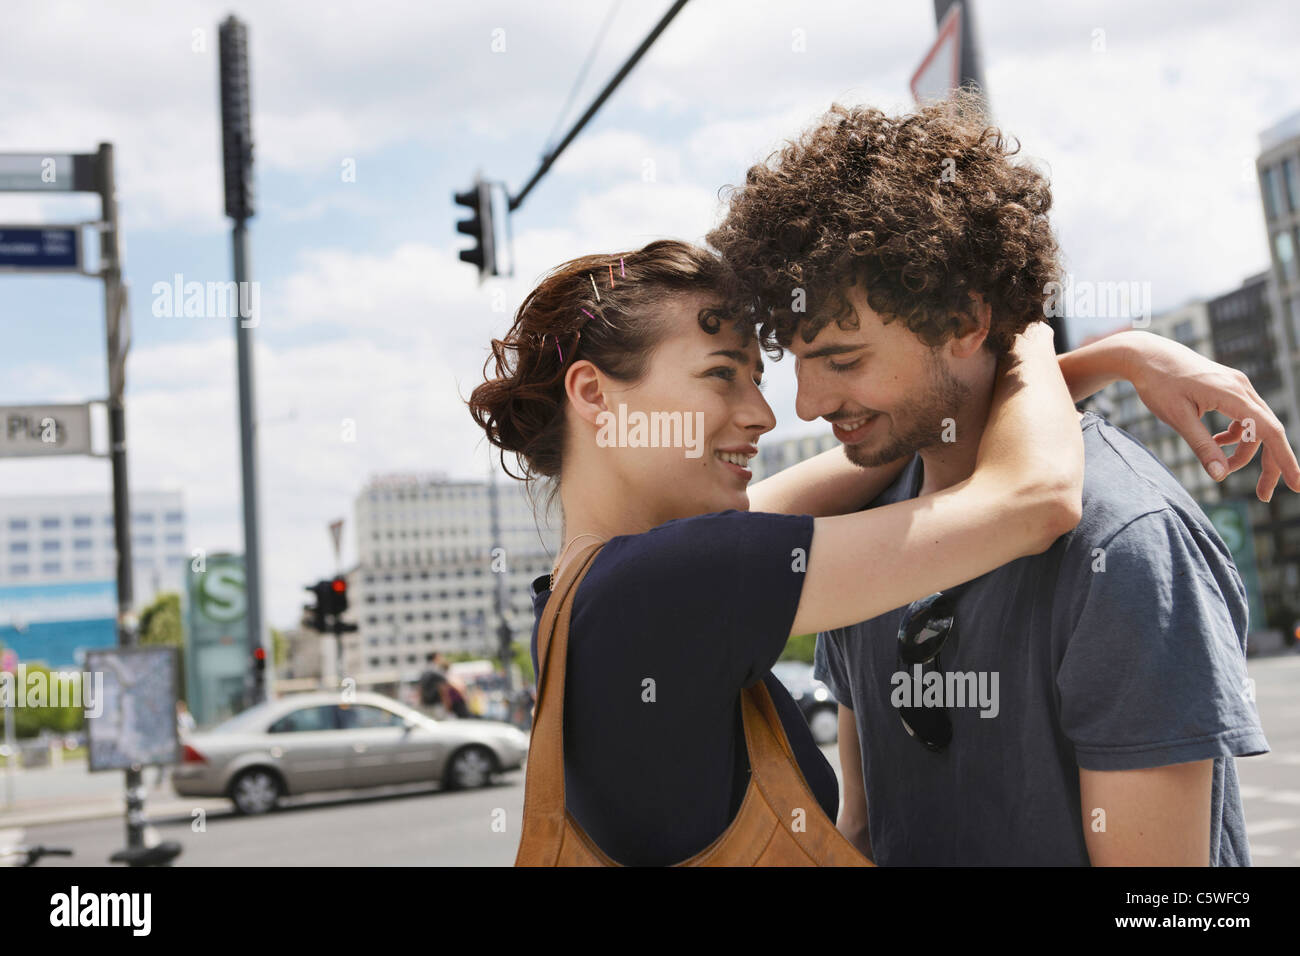 Germania Berlino giovane coppia abbracciando, ridendo, ritratto, close-up Foto Stock